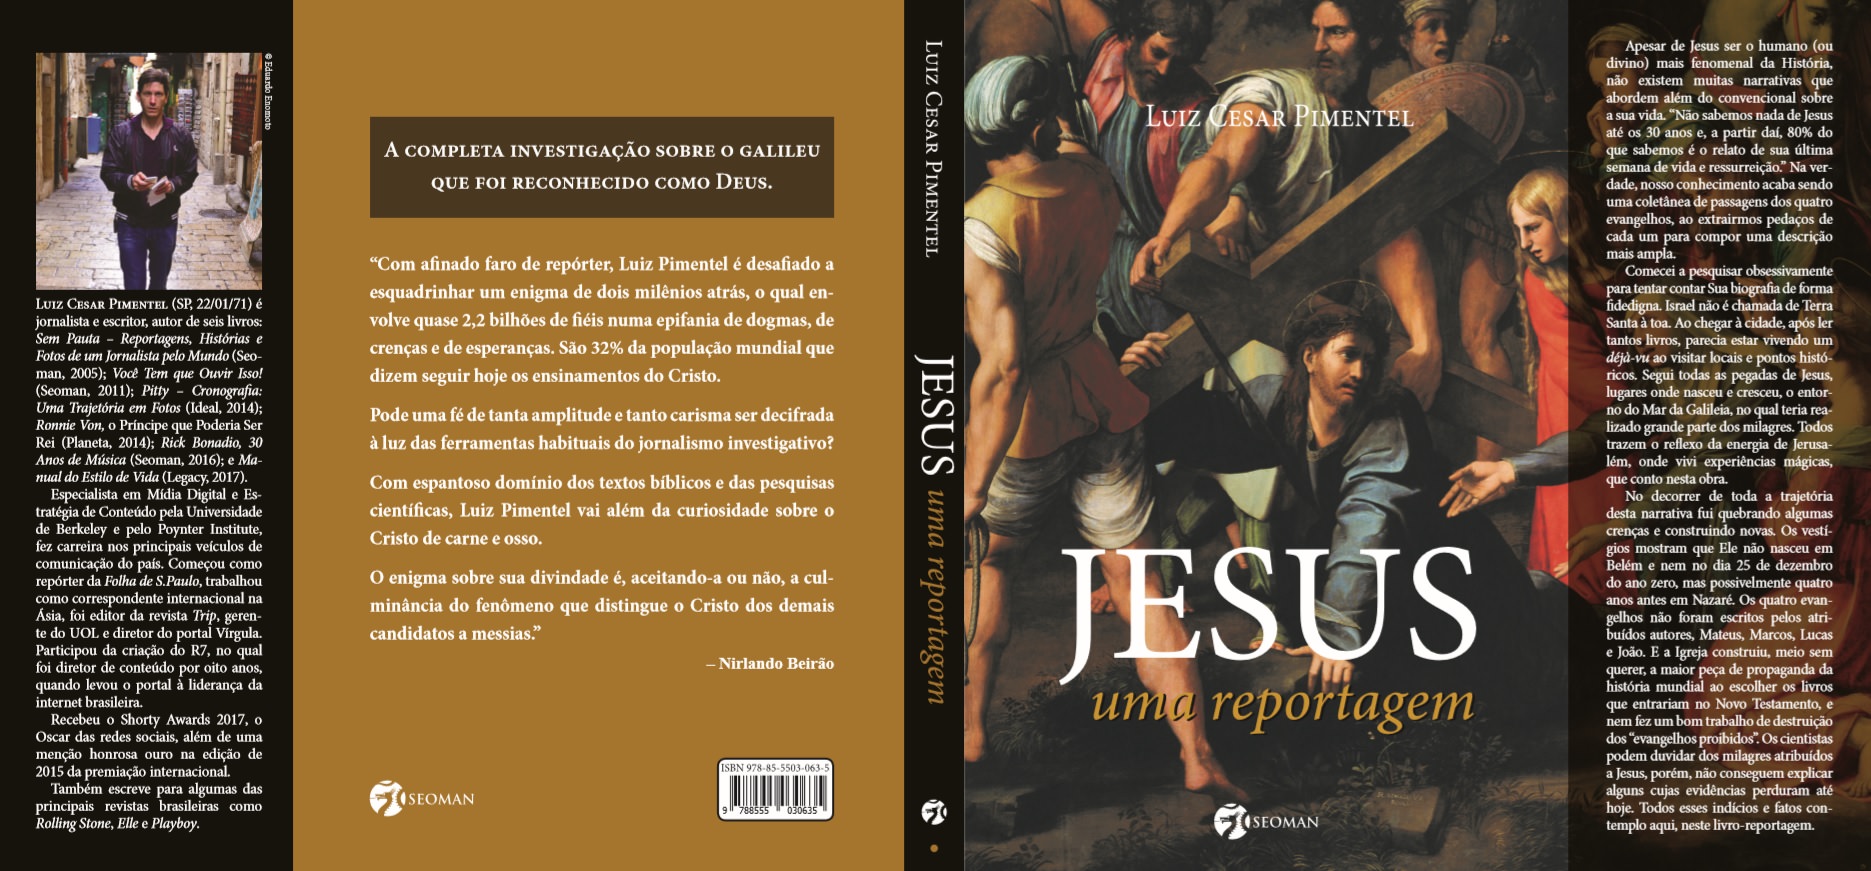 Книга «Иисус, Репортаже «Луис Сезар Пиментел, Обложка. Фото: Глобальный пресс MF.